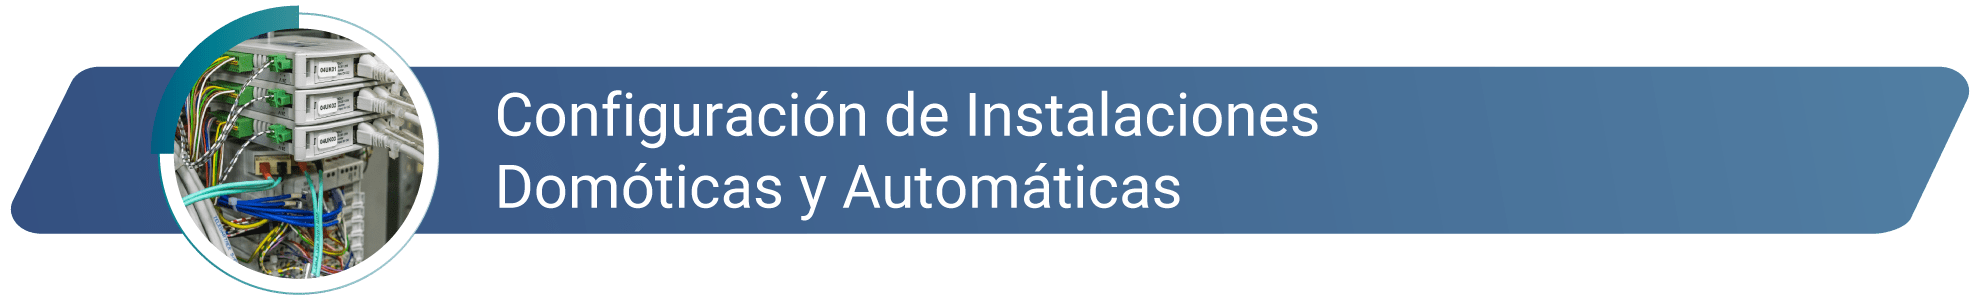 Configuración de Instalaciones domóticas y automáticas